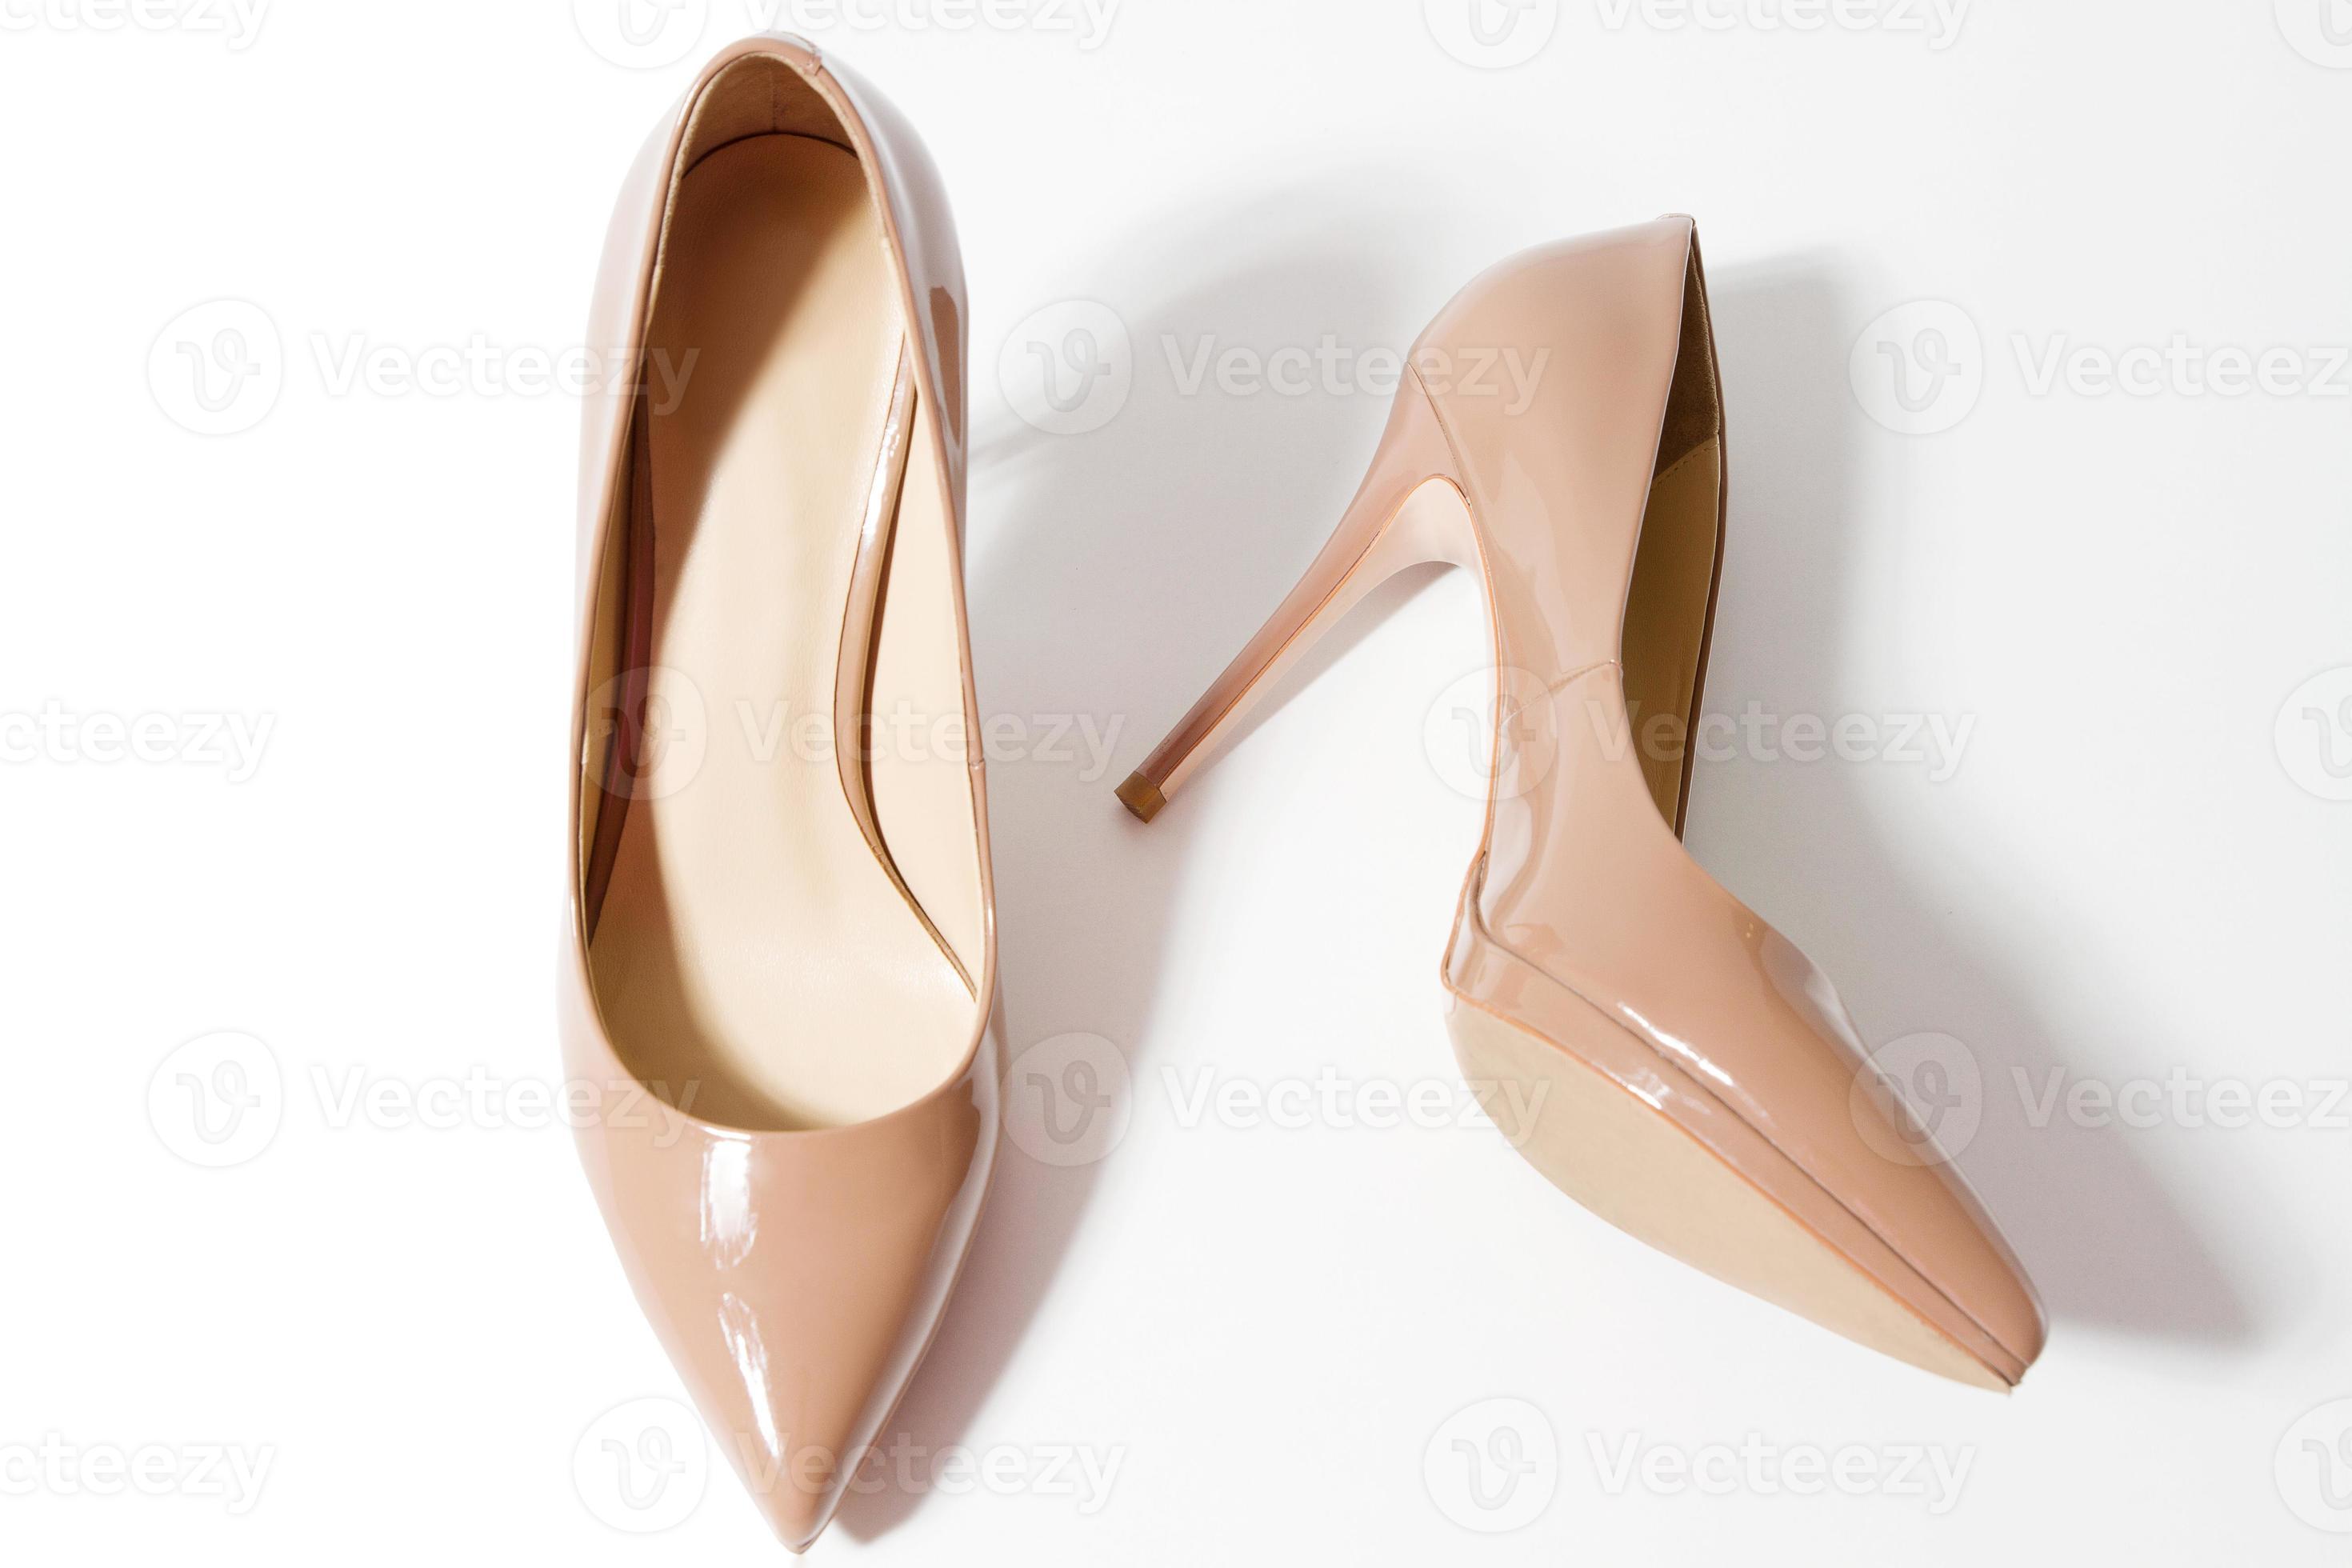 zapatos de mujer de altos de moda de primer color sobre fondo blanco. vista superior. estilo de zapato de aguja en el armario de las damas. accesorio femenino